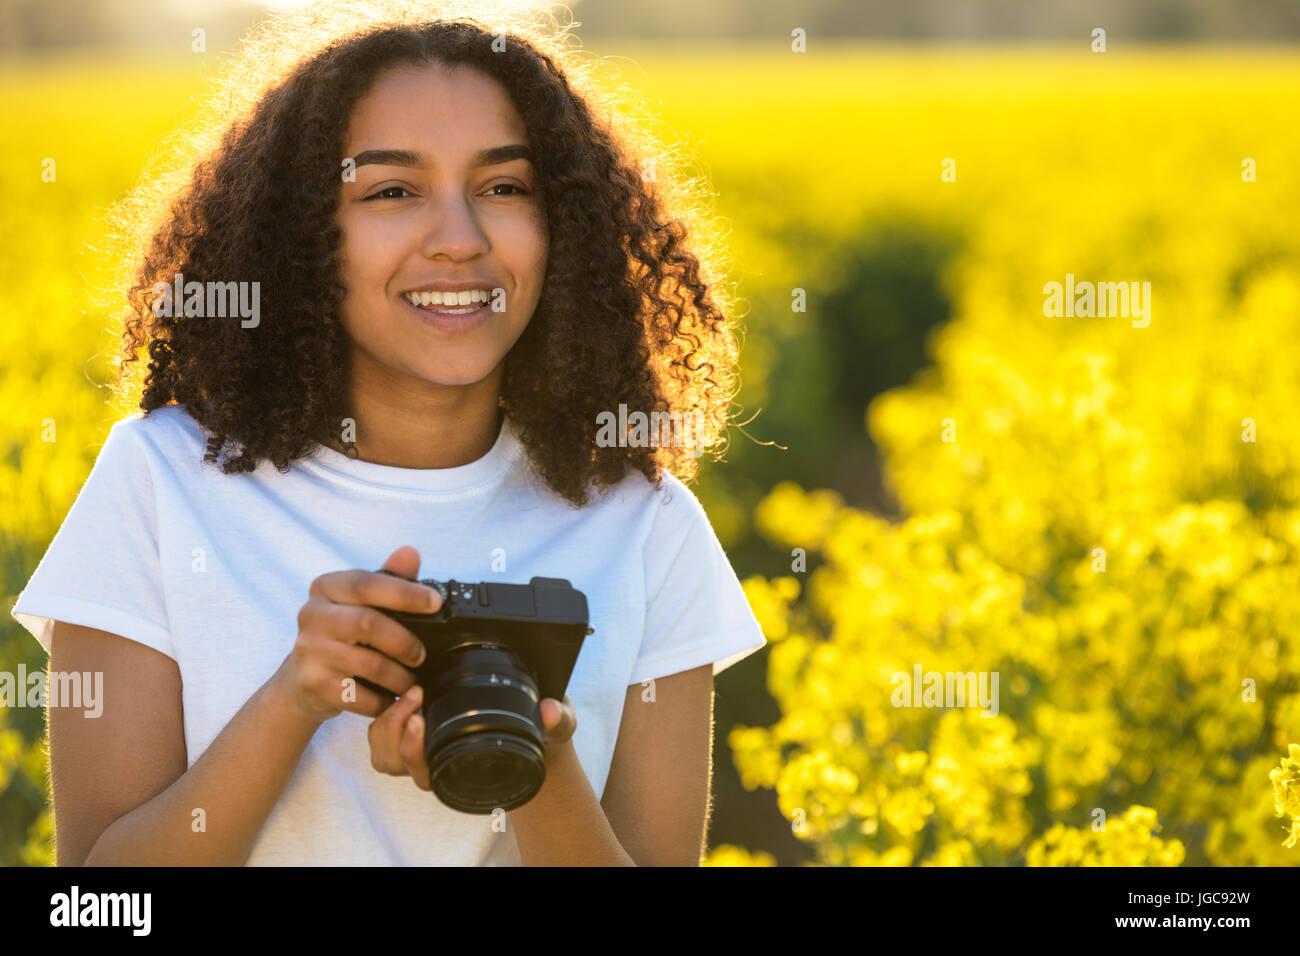 Schöne glückliche Mischlinge afroamerikanische Mädchen Teenager weibliche junge Frau lächelnd im Freien bei Sonnenschein fotografieren mit einer Kamera Stockfoto